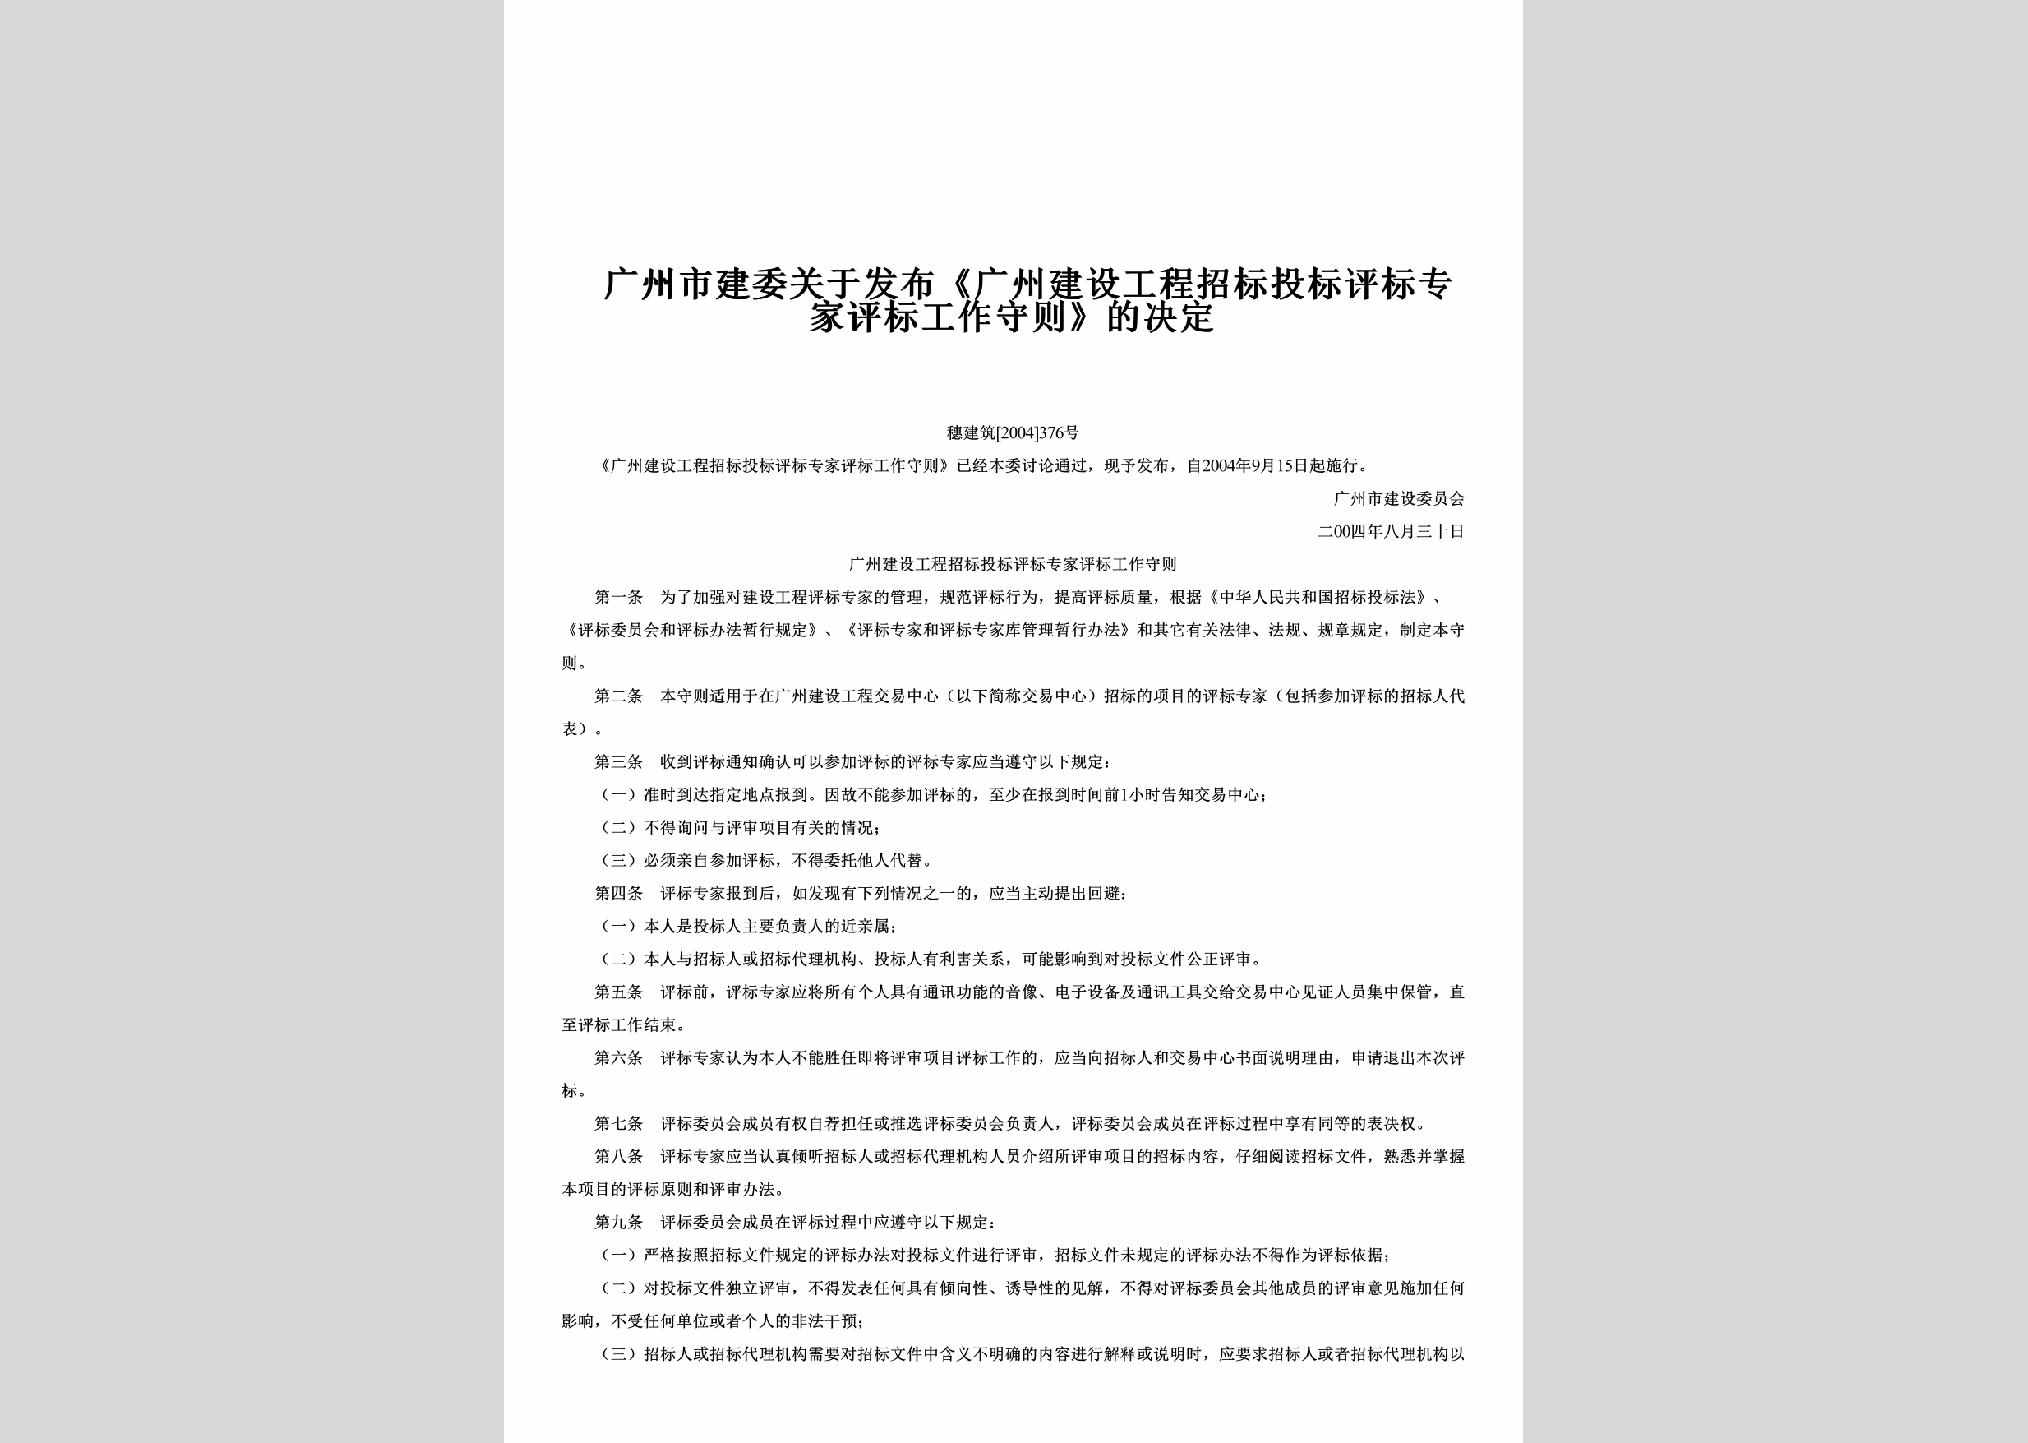 穗建筑[2004]376号：关于发布《广州建设工程招标投标评标专家评标工作守则》的决定